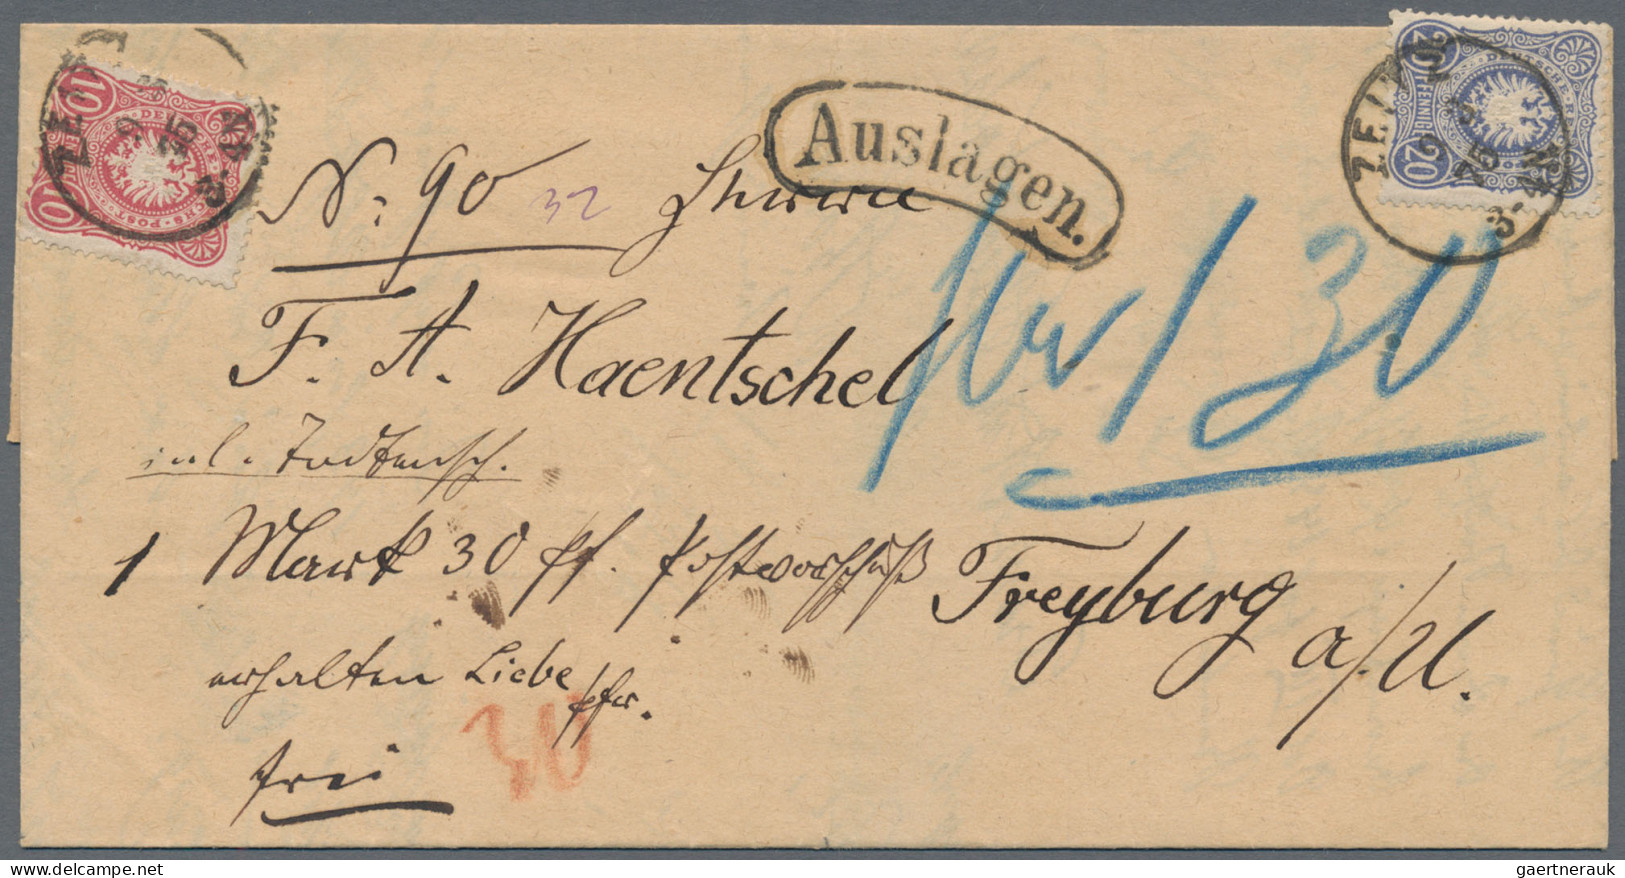 Deutsches Reich: 1872/1932, Partie von ca. 250 Briefen und Karten, unterschiedli